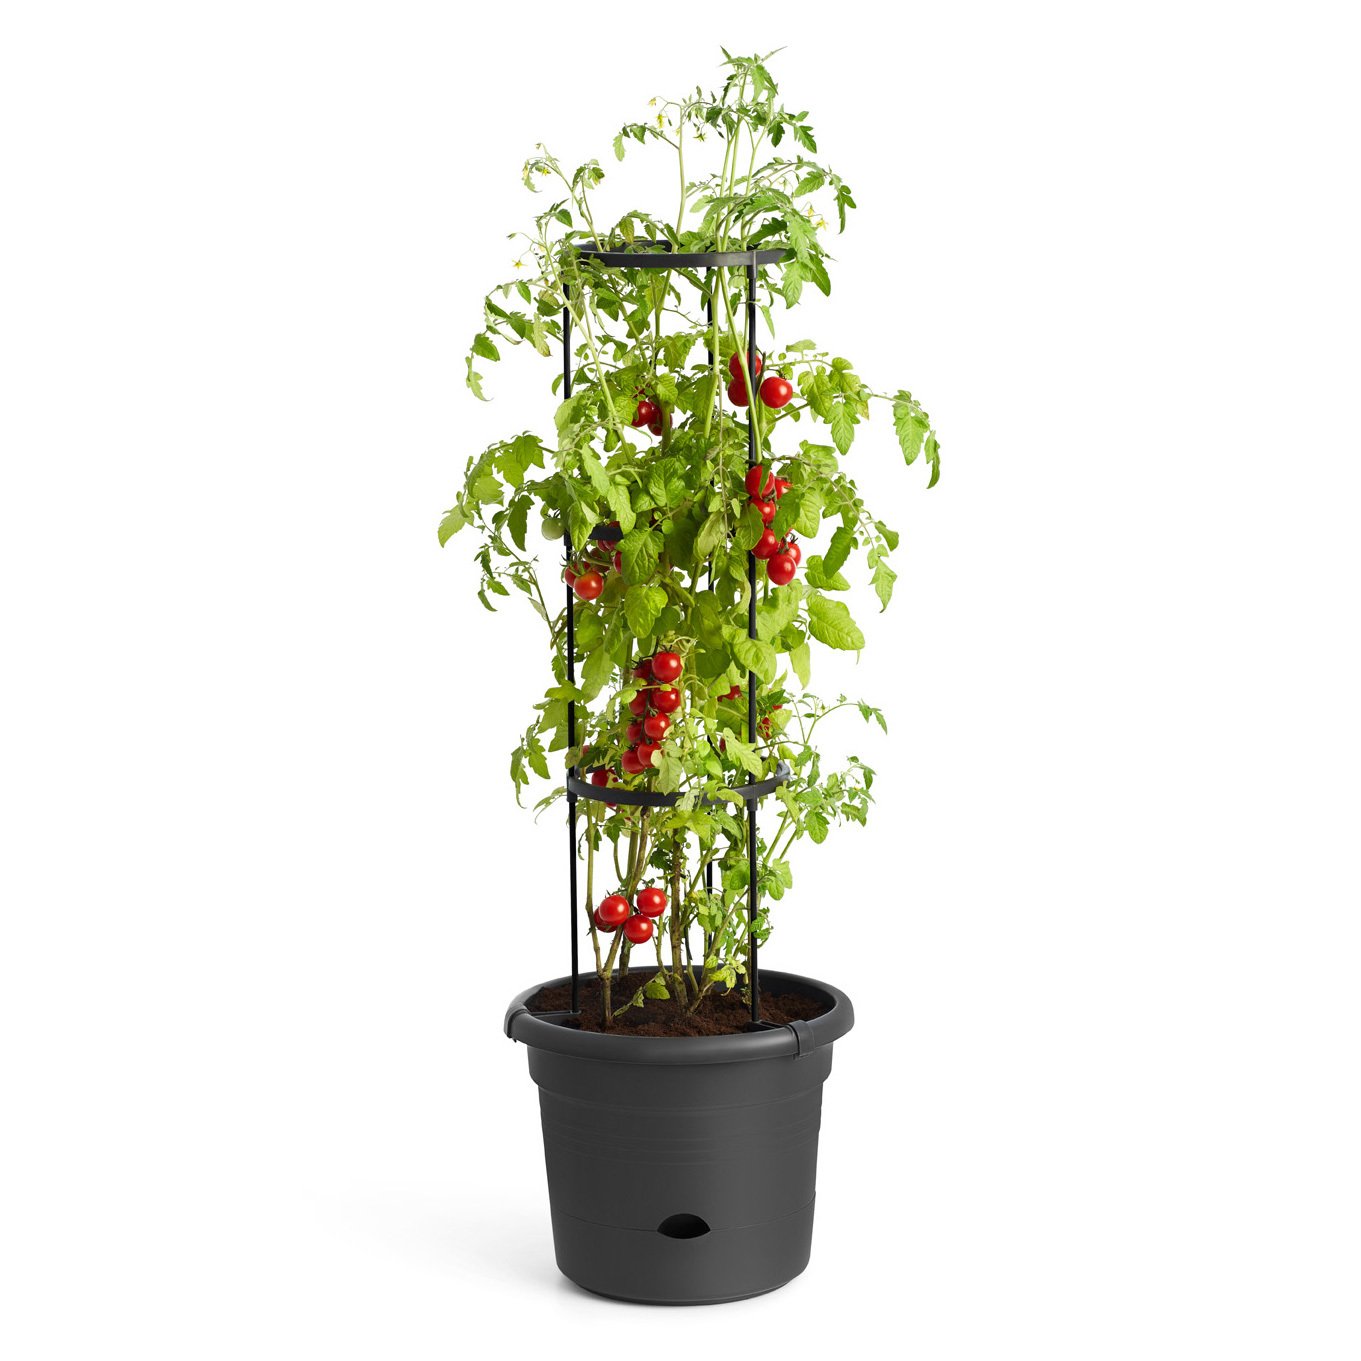 Tomatentopf „Green Basics“ in Living Black von Elho, Maße D 33 x H 25, 13 Liter